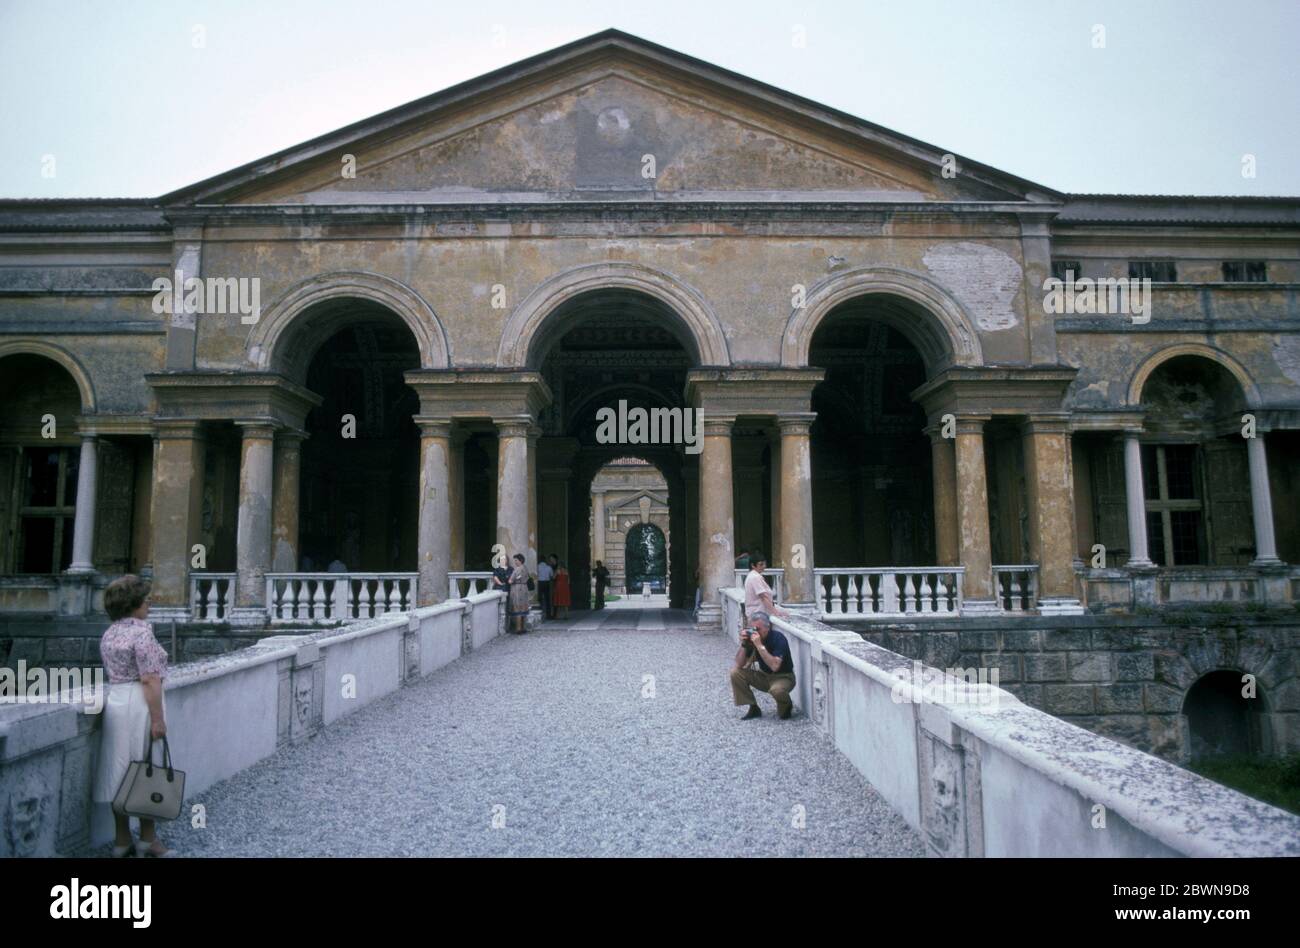 Palazzo del Te in Mantua, erbaut 1534, Lombardei, Italien im Bild 1971 Stockfoto